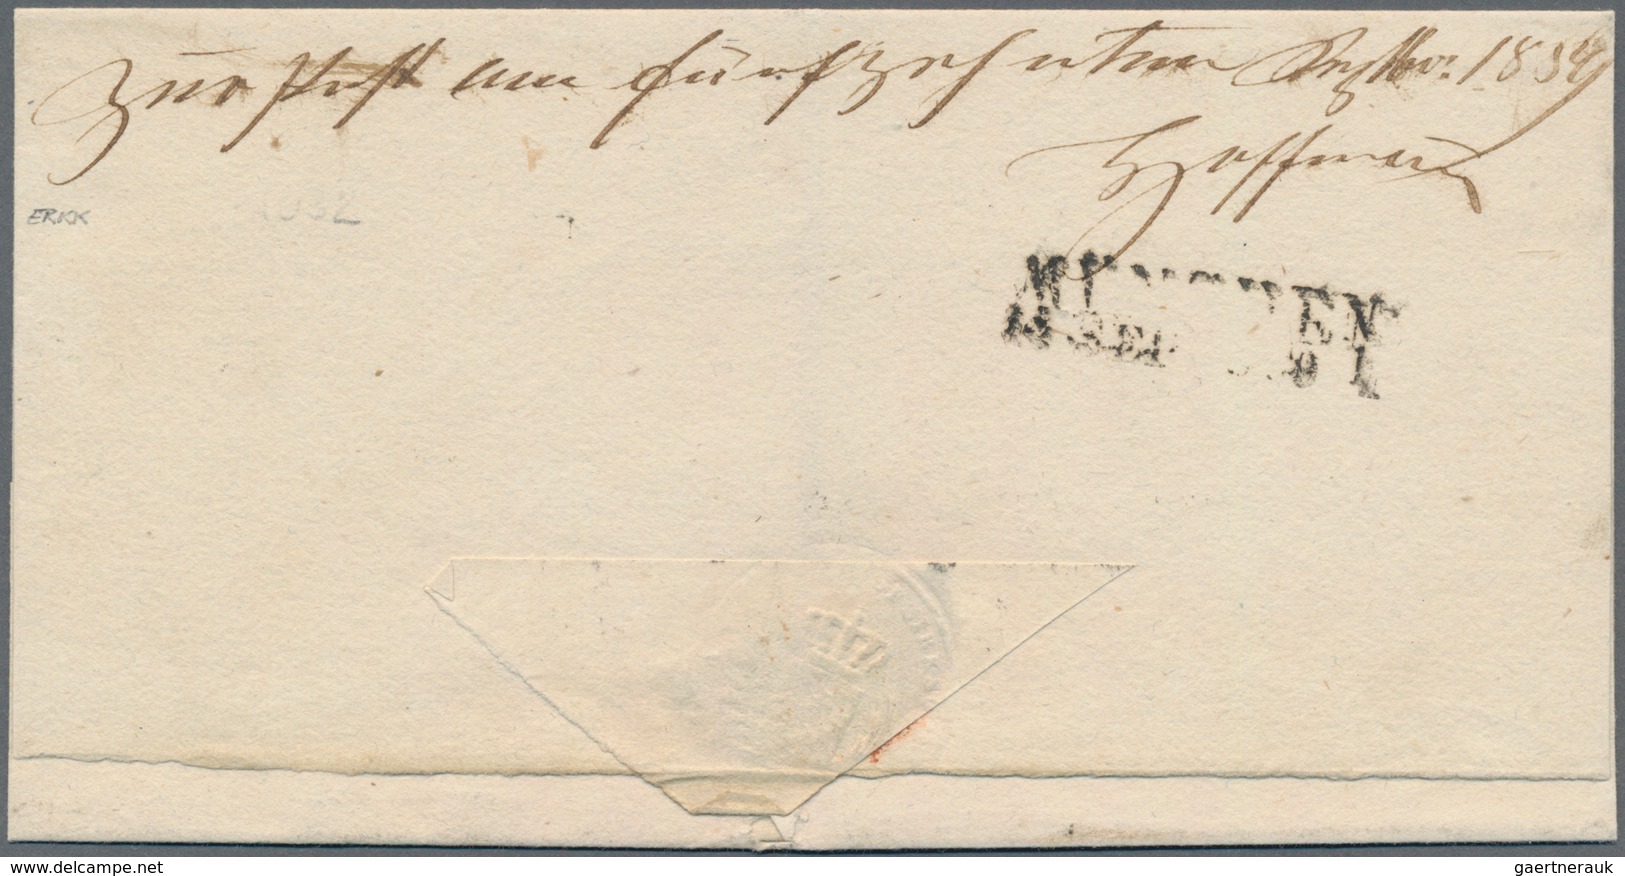 Bayern - Marken Und Briefe: 1850, 3 Kreuzer Blau, Platte 5 Mit 1 Kr Rosa, Platte 1, Entwertet Mit Of - Autres & Non Classés